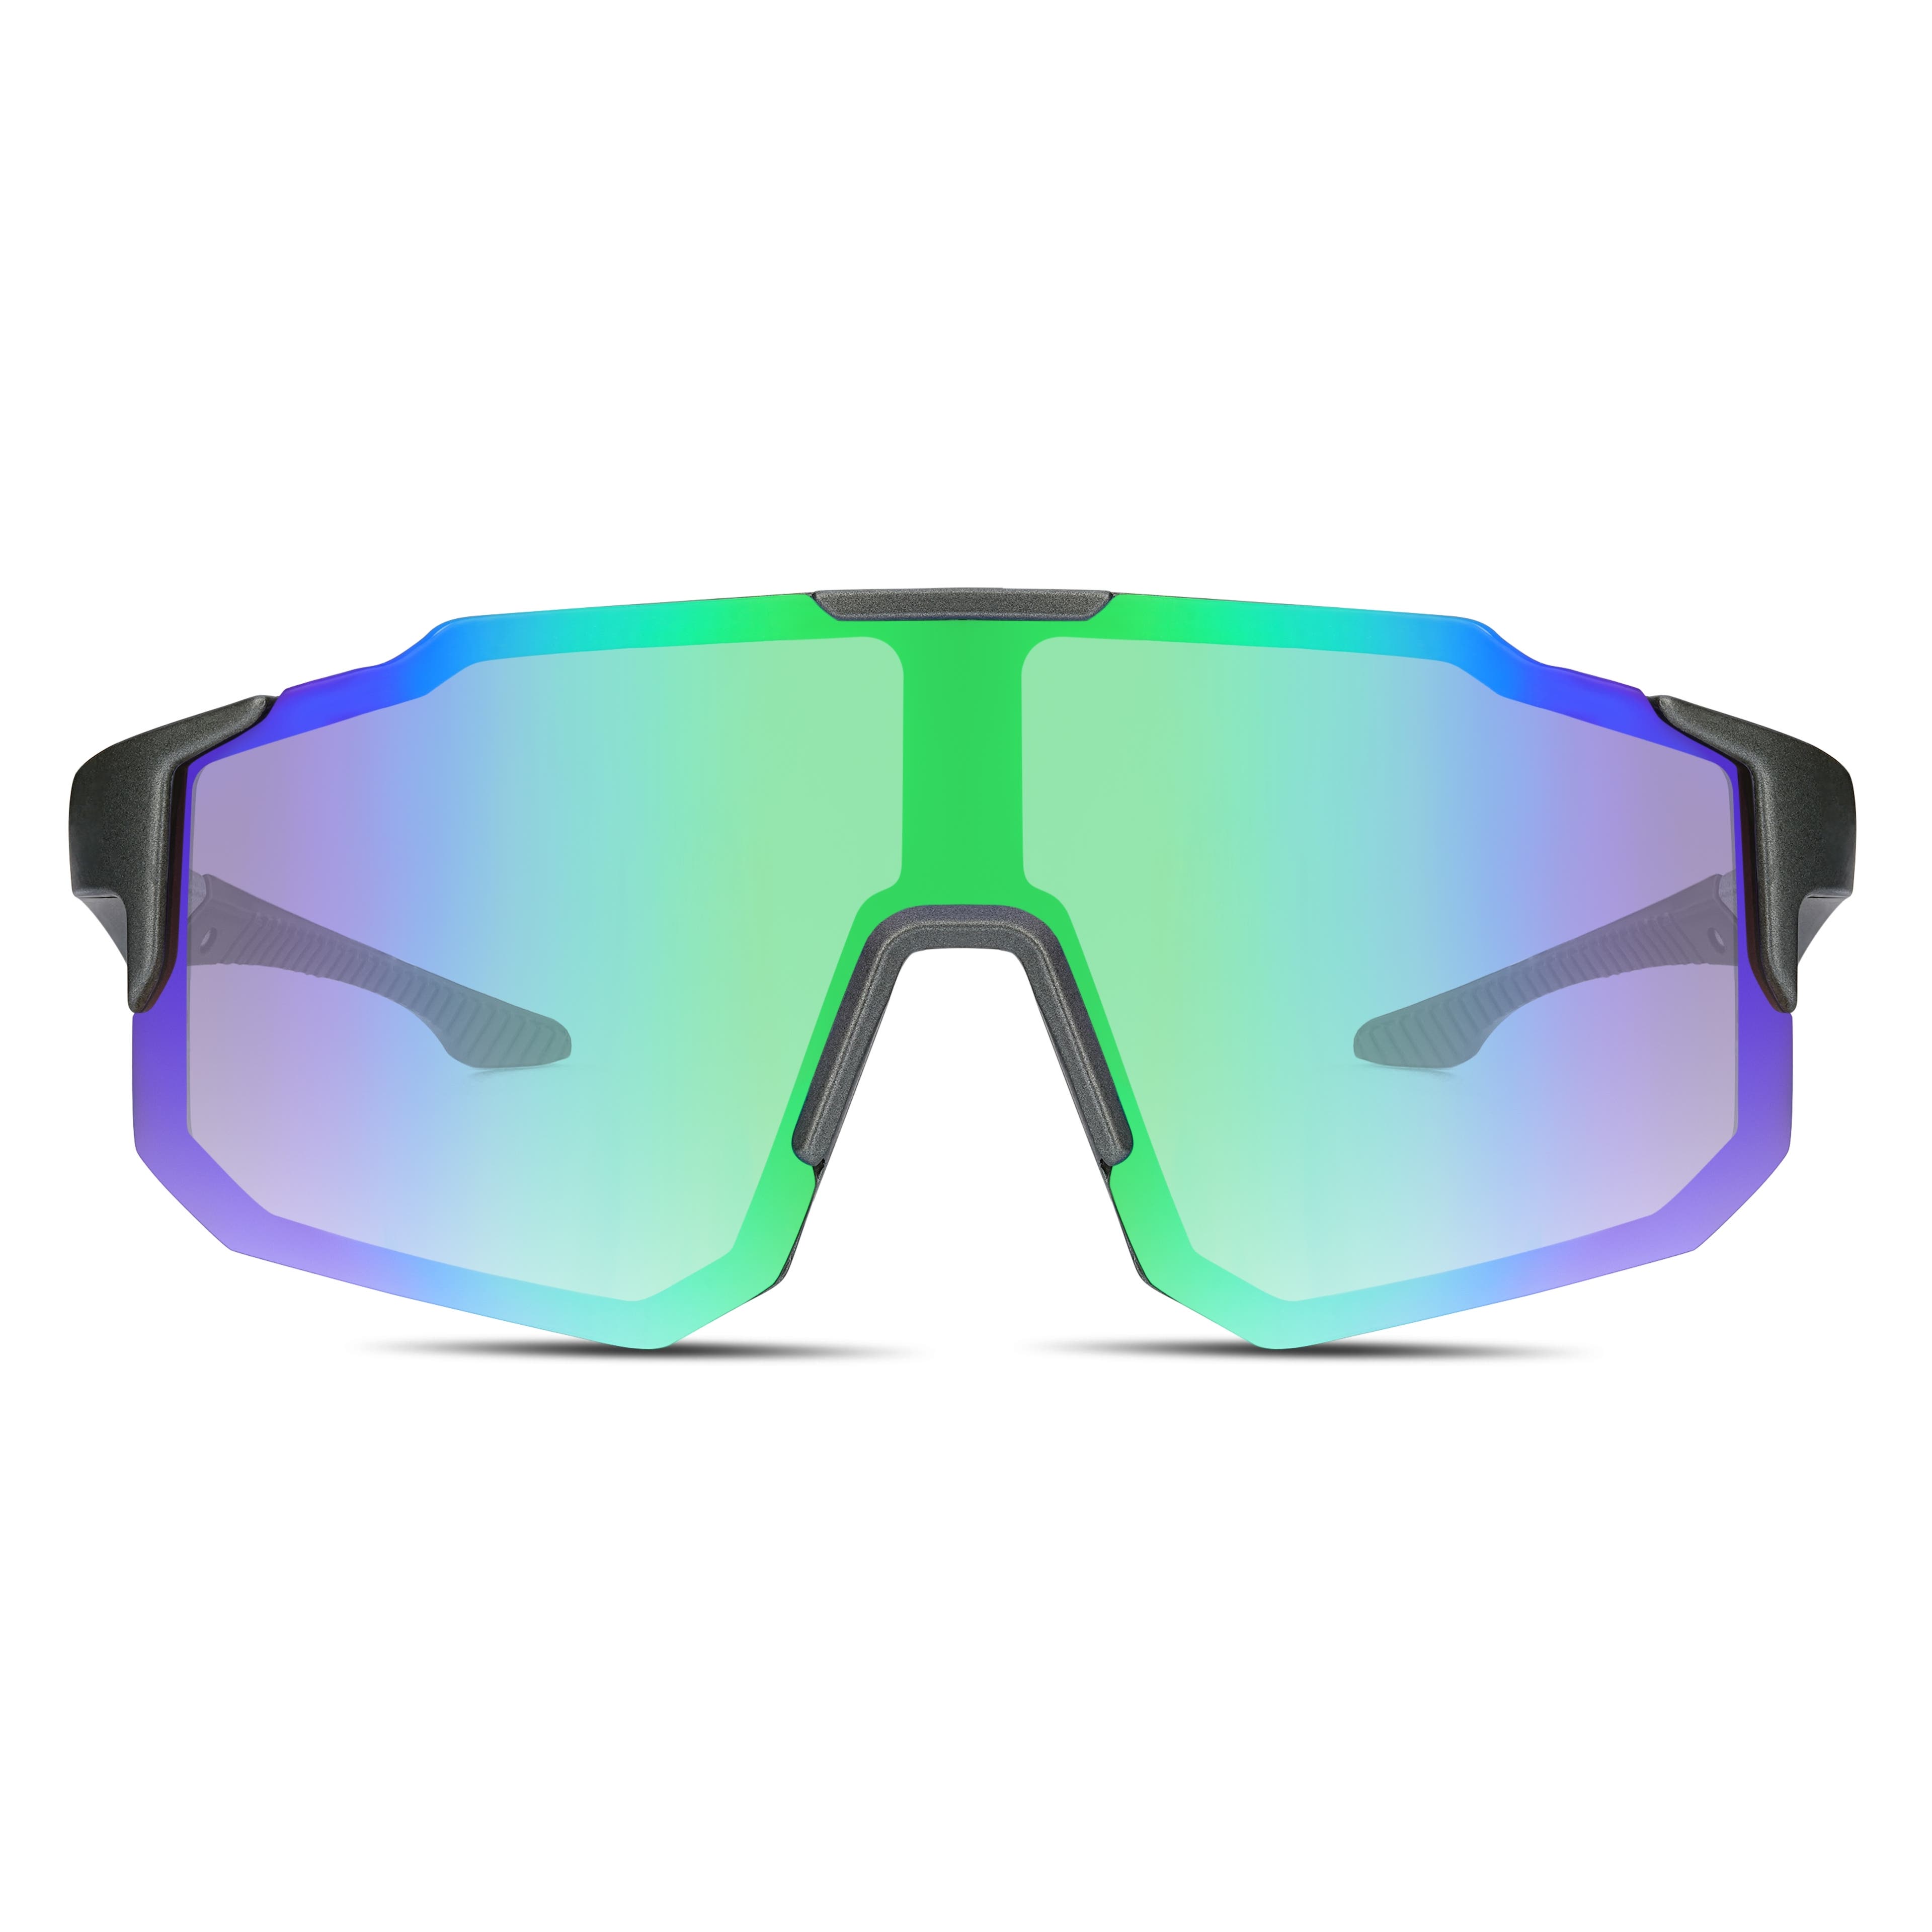 Schwarz & grün Sport Sonnenbrille mit umschließendem Rahmen




